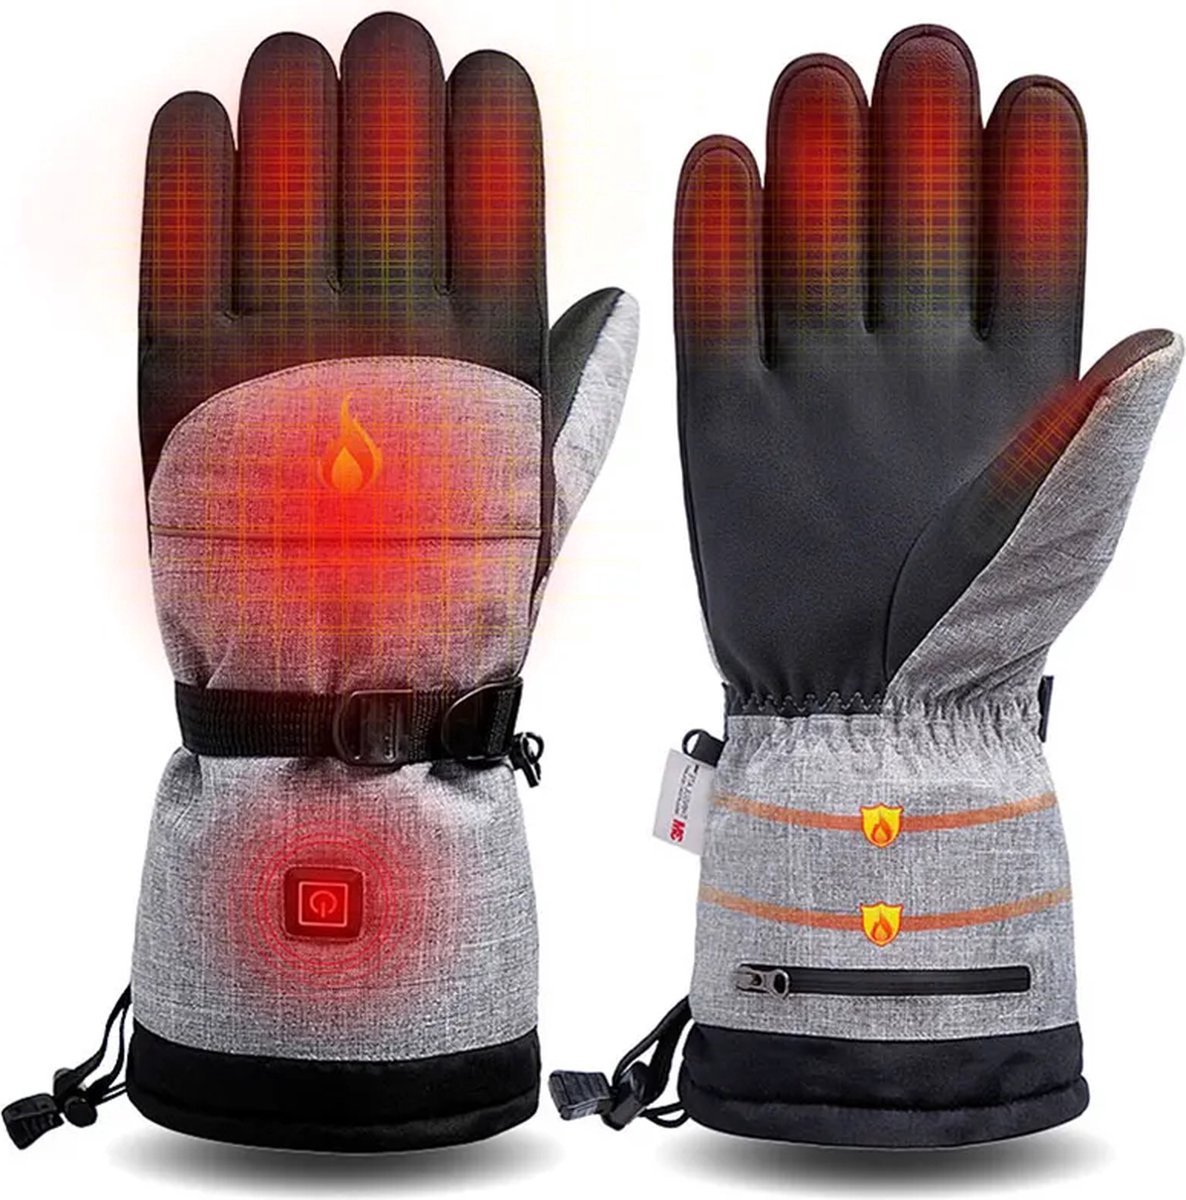 SensorPro - Verwarmde Handschoenen - Verwarmde Handschoenen Elektrisch - Inclusief Oplaadbare Accu met Oplaadkabel - Heated Gloves - Thermohandschoenen - Unisex - One Size Fits All